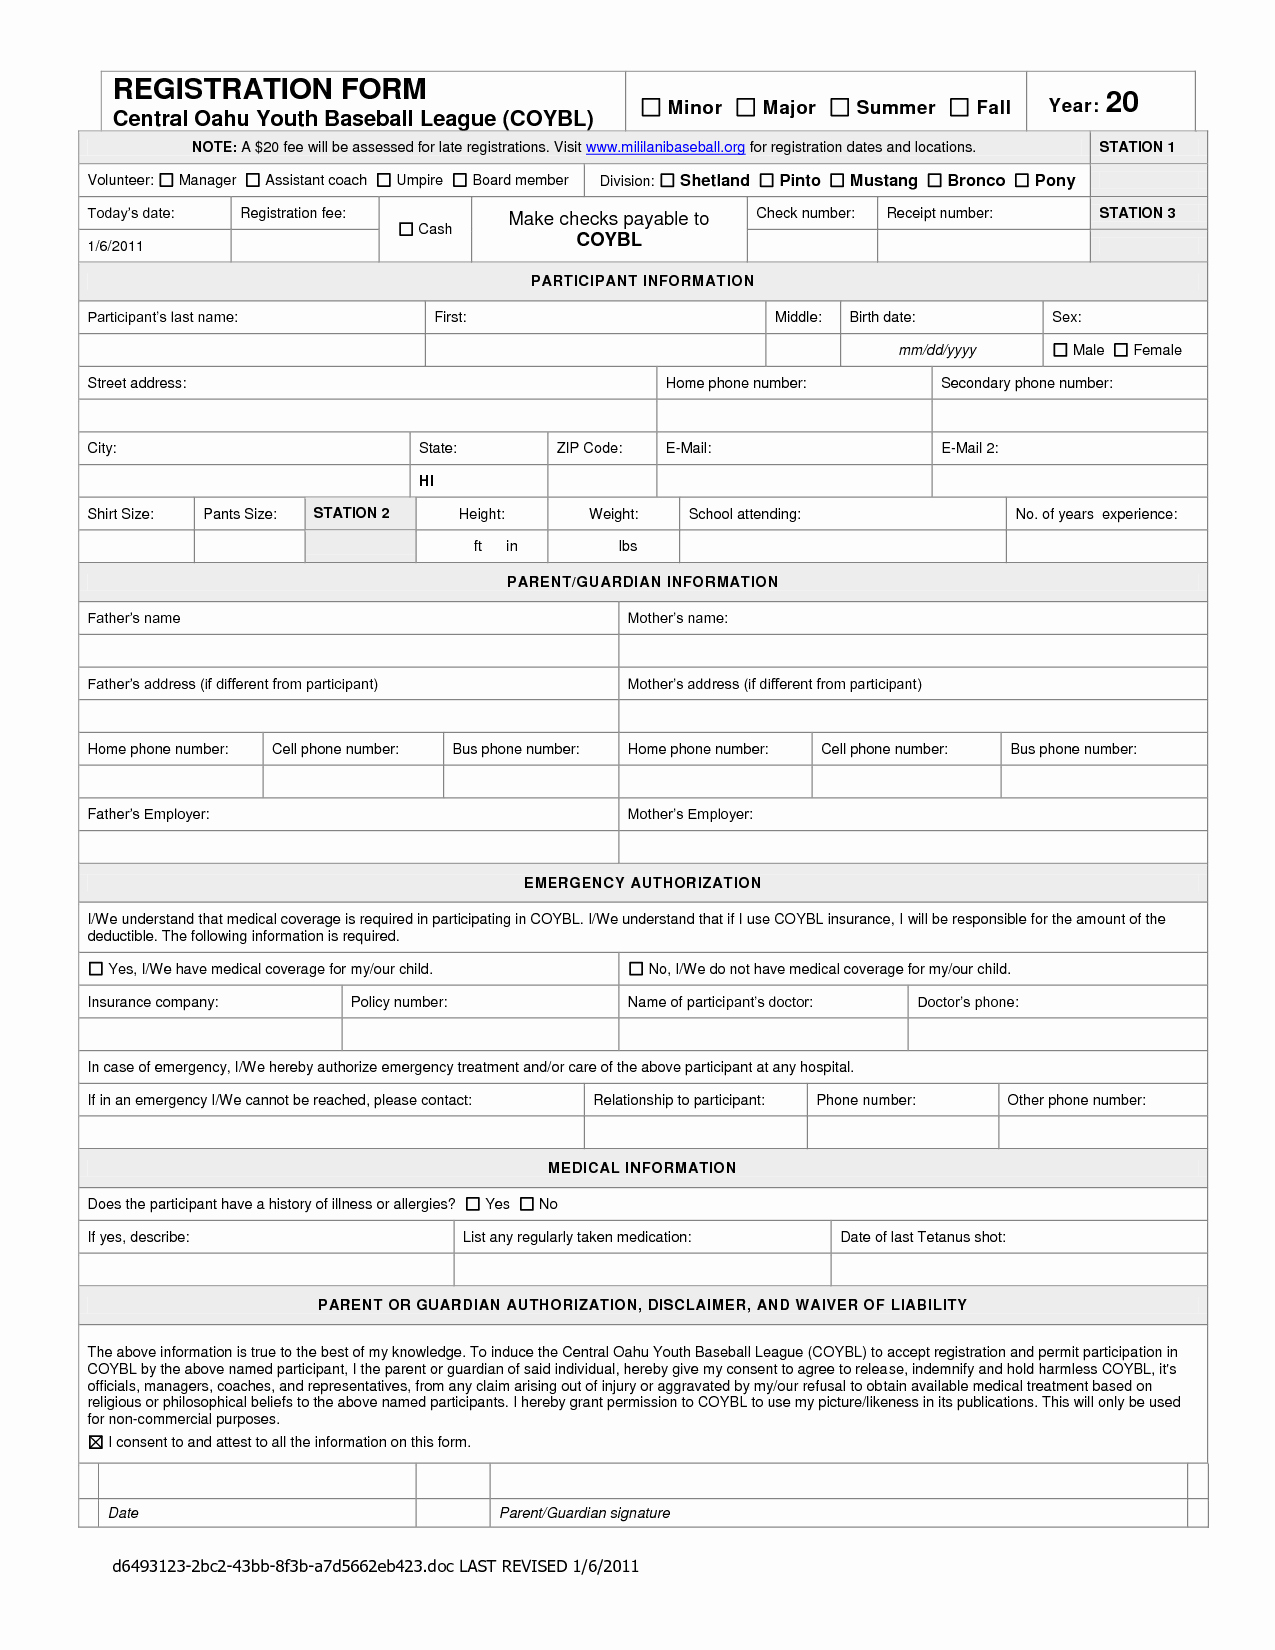 Hospital Release form Template Elegant form New Hospital Release form Hospital Release form